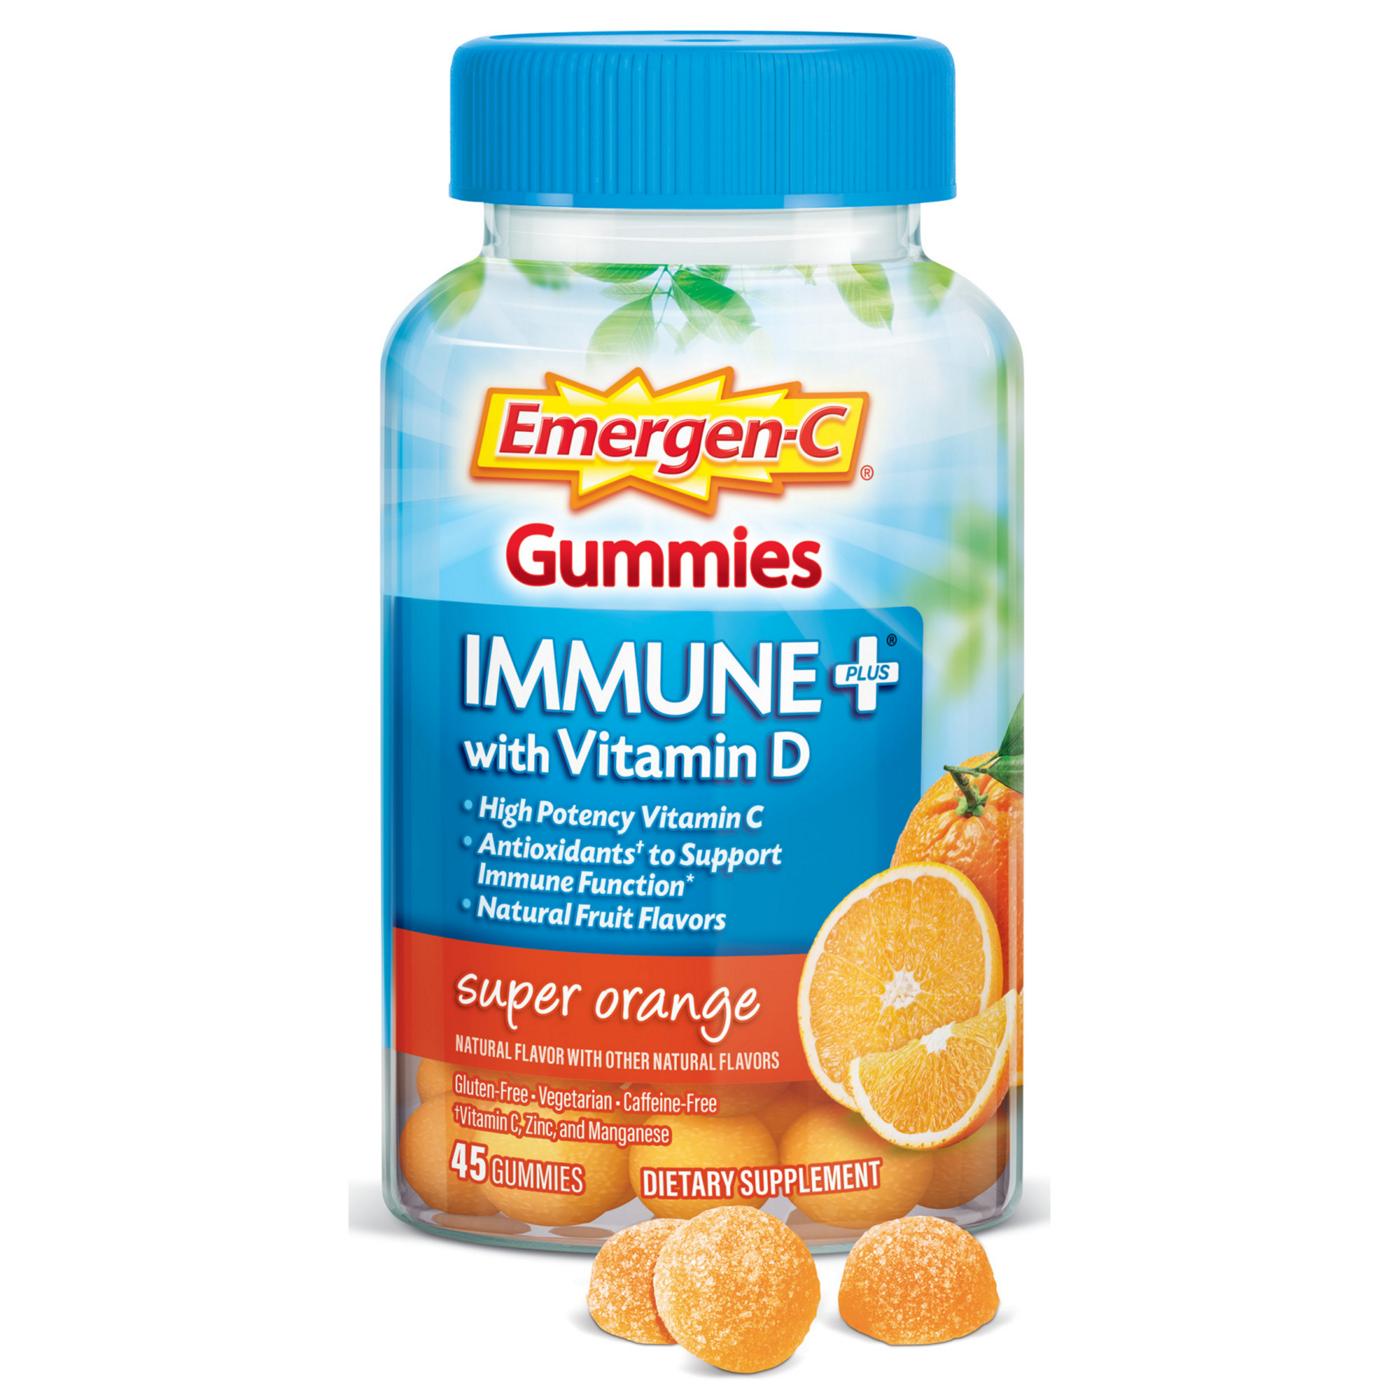 Emergen-C Immune+ with Vitamin D Gummies - Super Orange; image 7 of 7